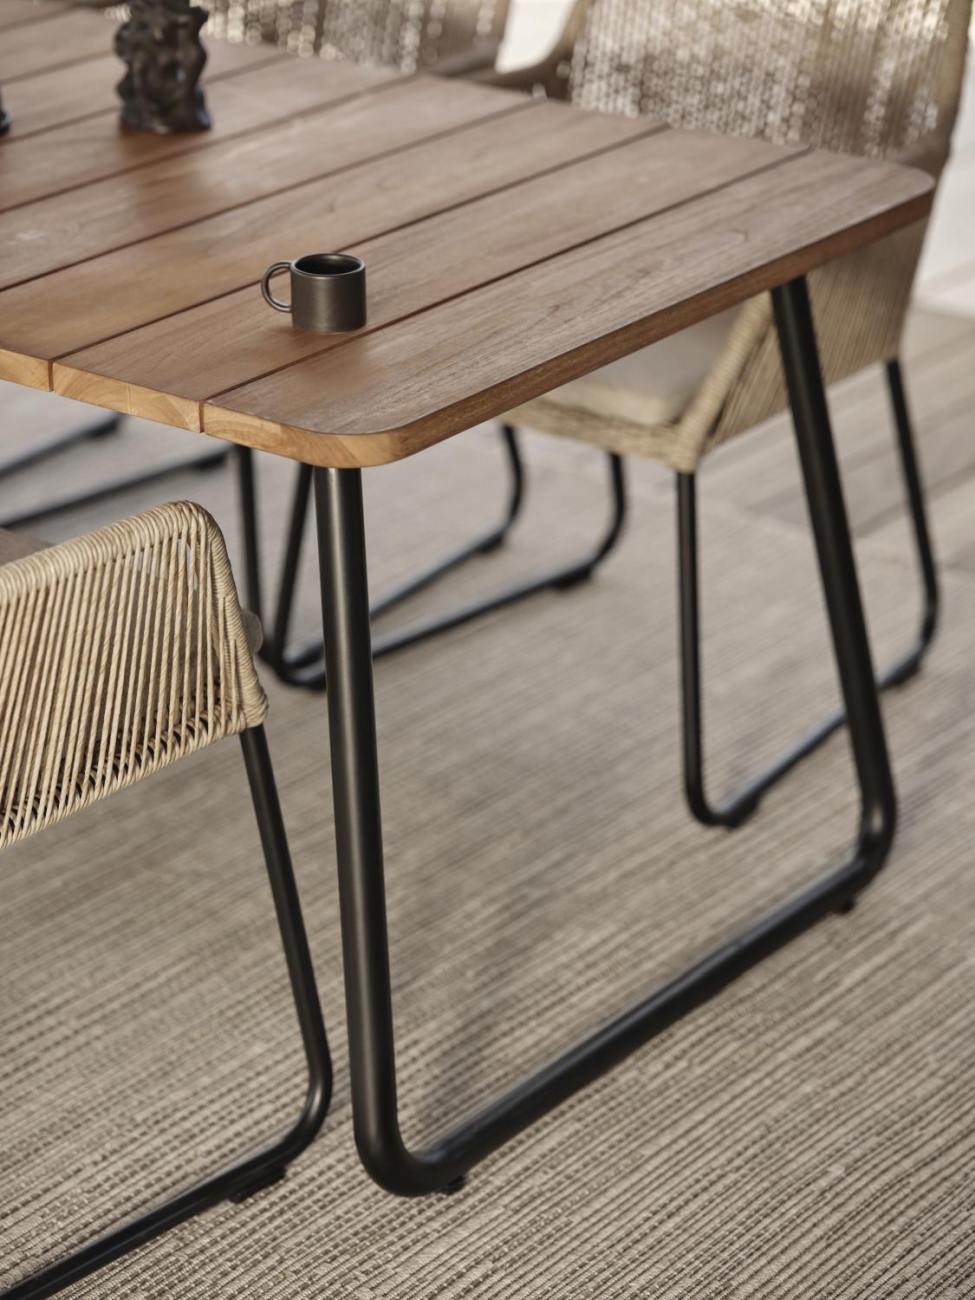 Der Gartenesstisch Nolli überzeugt mit seinem modernen Design. Gefertigt wurde die Tischplatte aus Teakholz und hat einen natürlichen Farbton. Das Gestell ist auch aus Metall und hat eine schwarze Farbe. Der Tisch besitzt eine Länge von 175 cm.